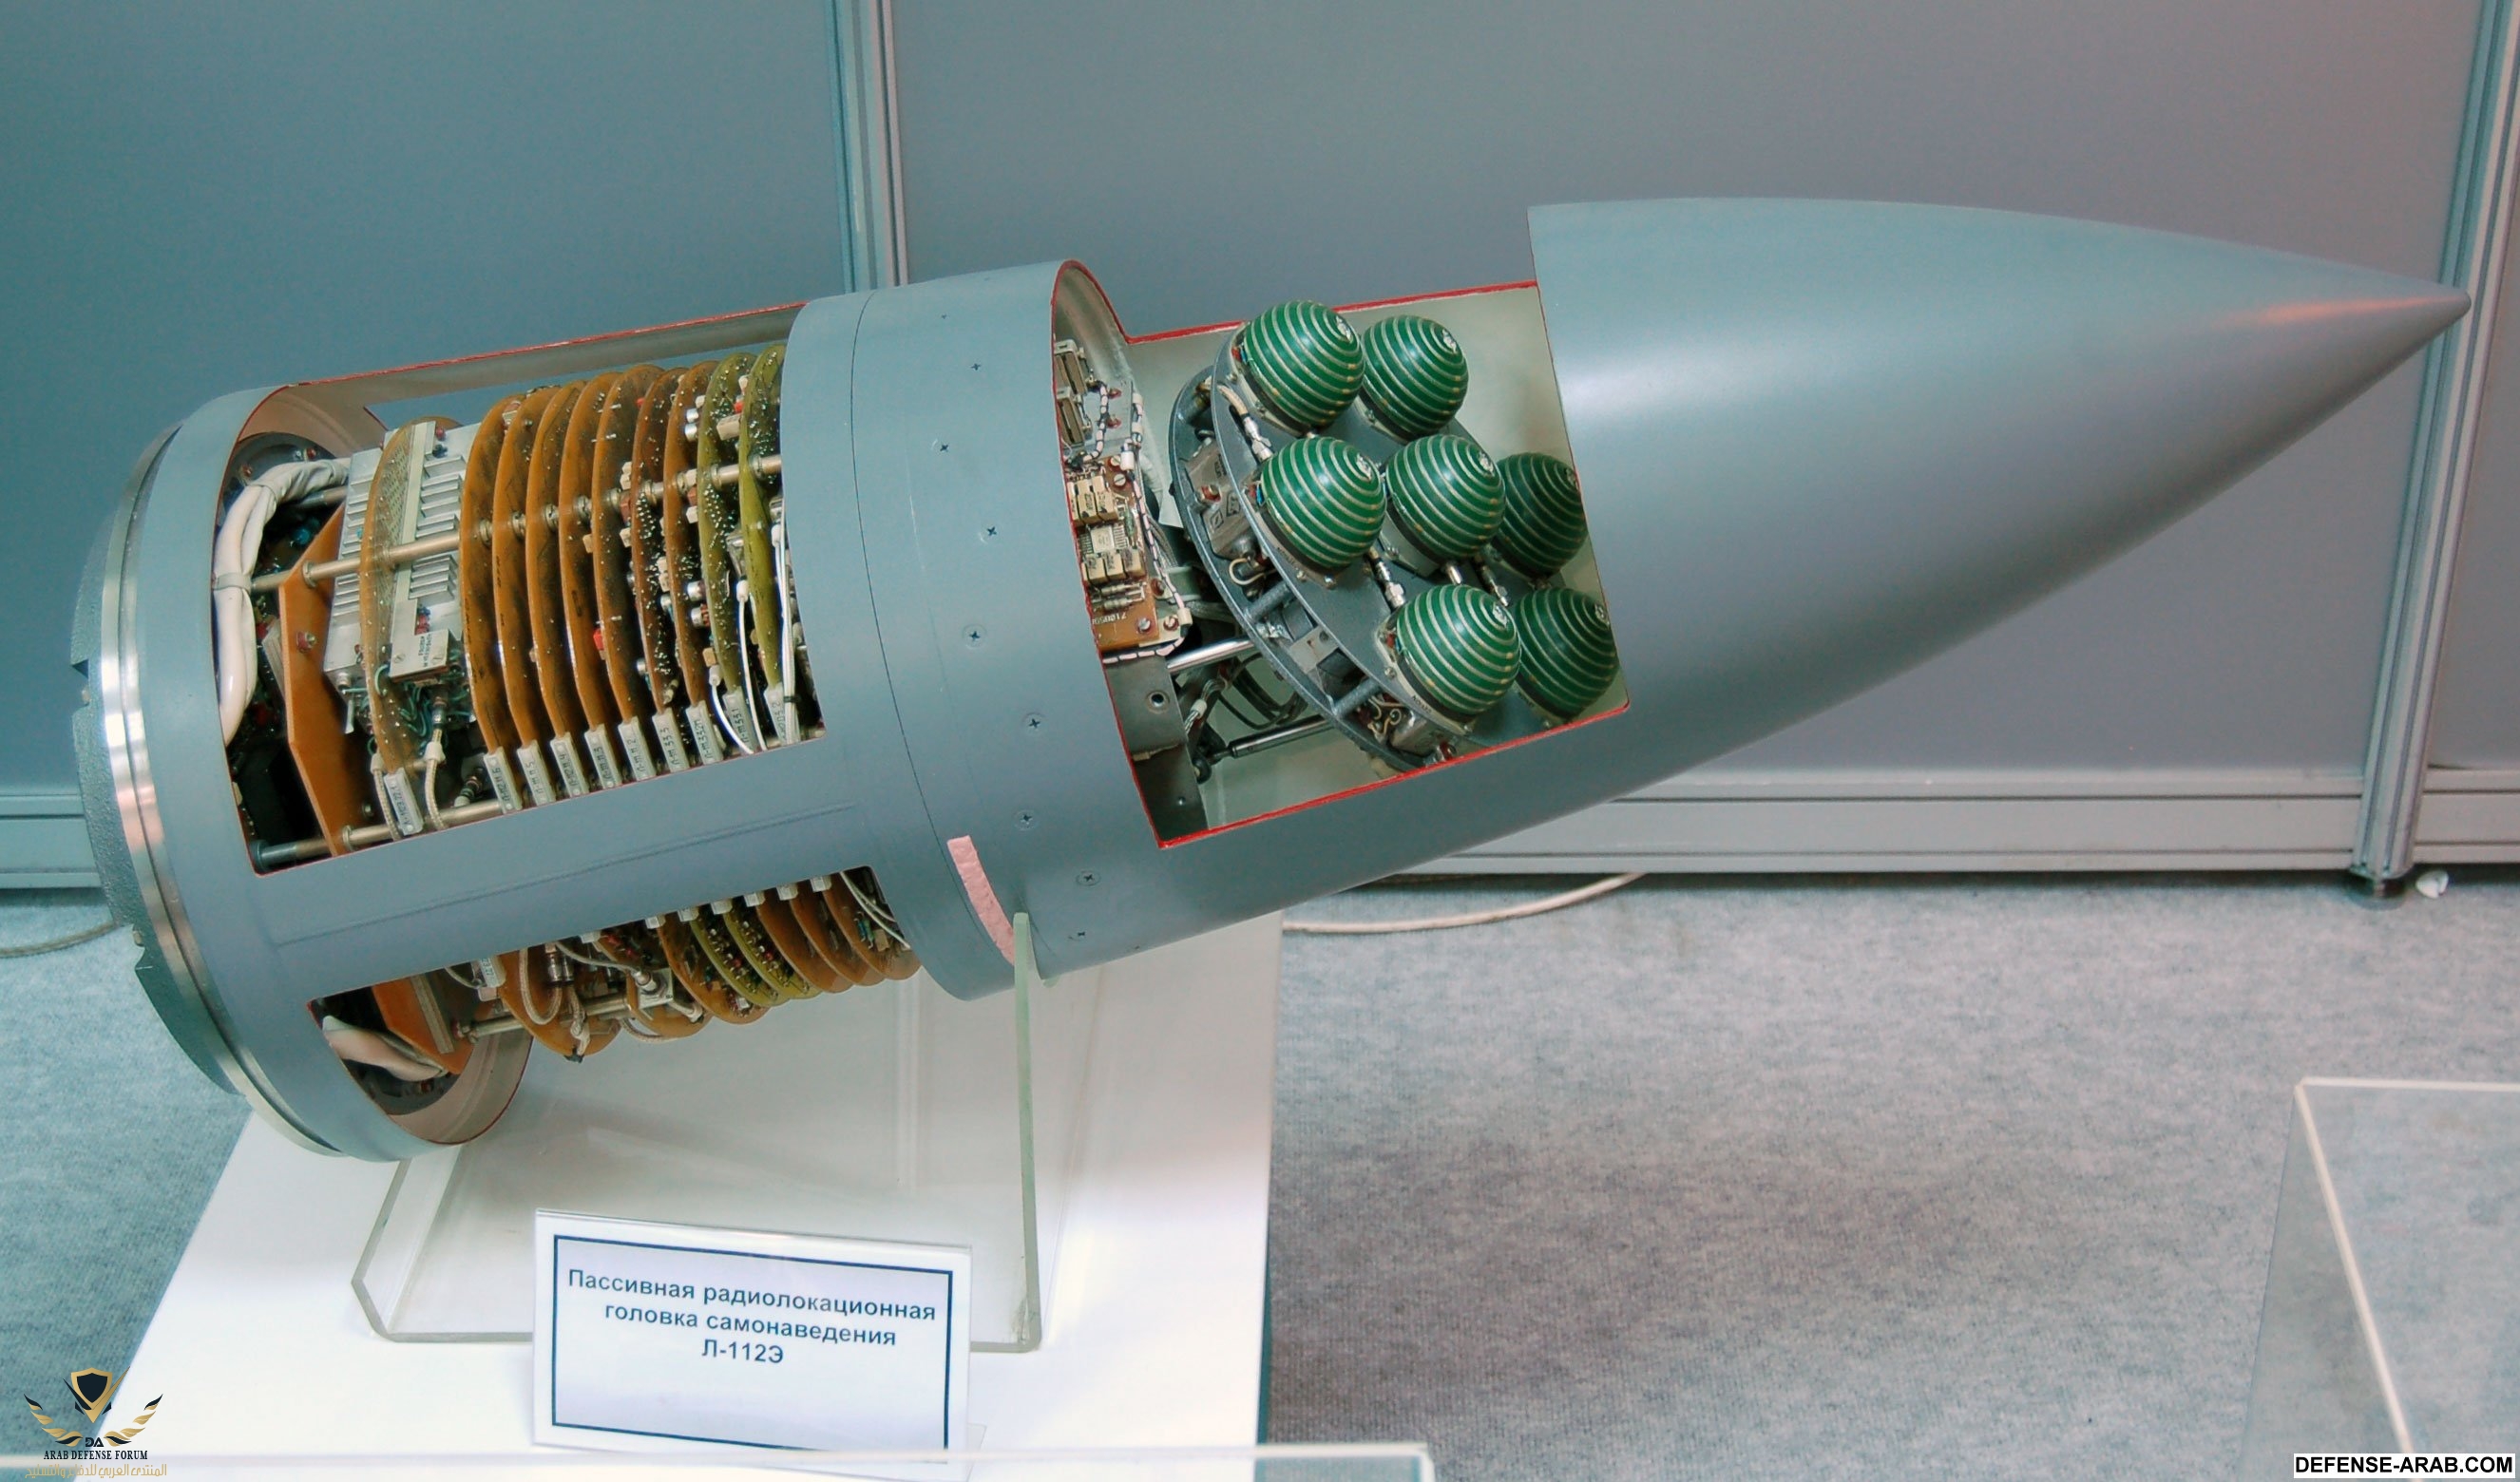 Seeker_of_Kh-31_missile.jpg